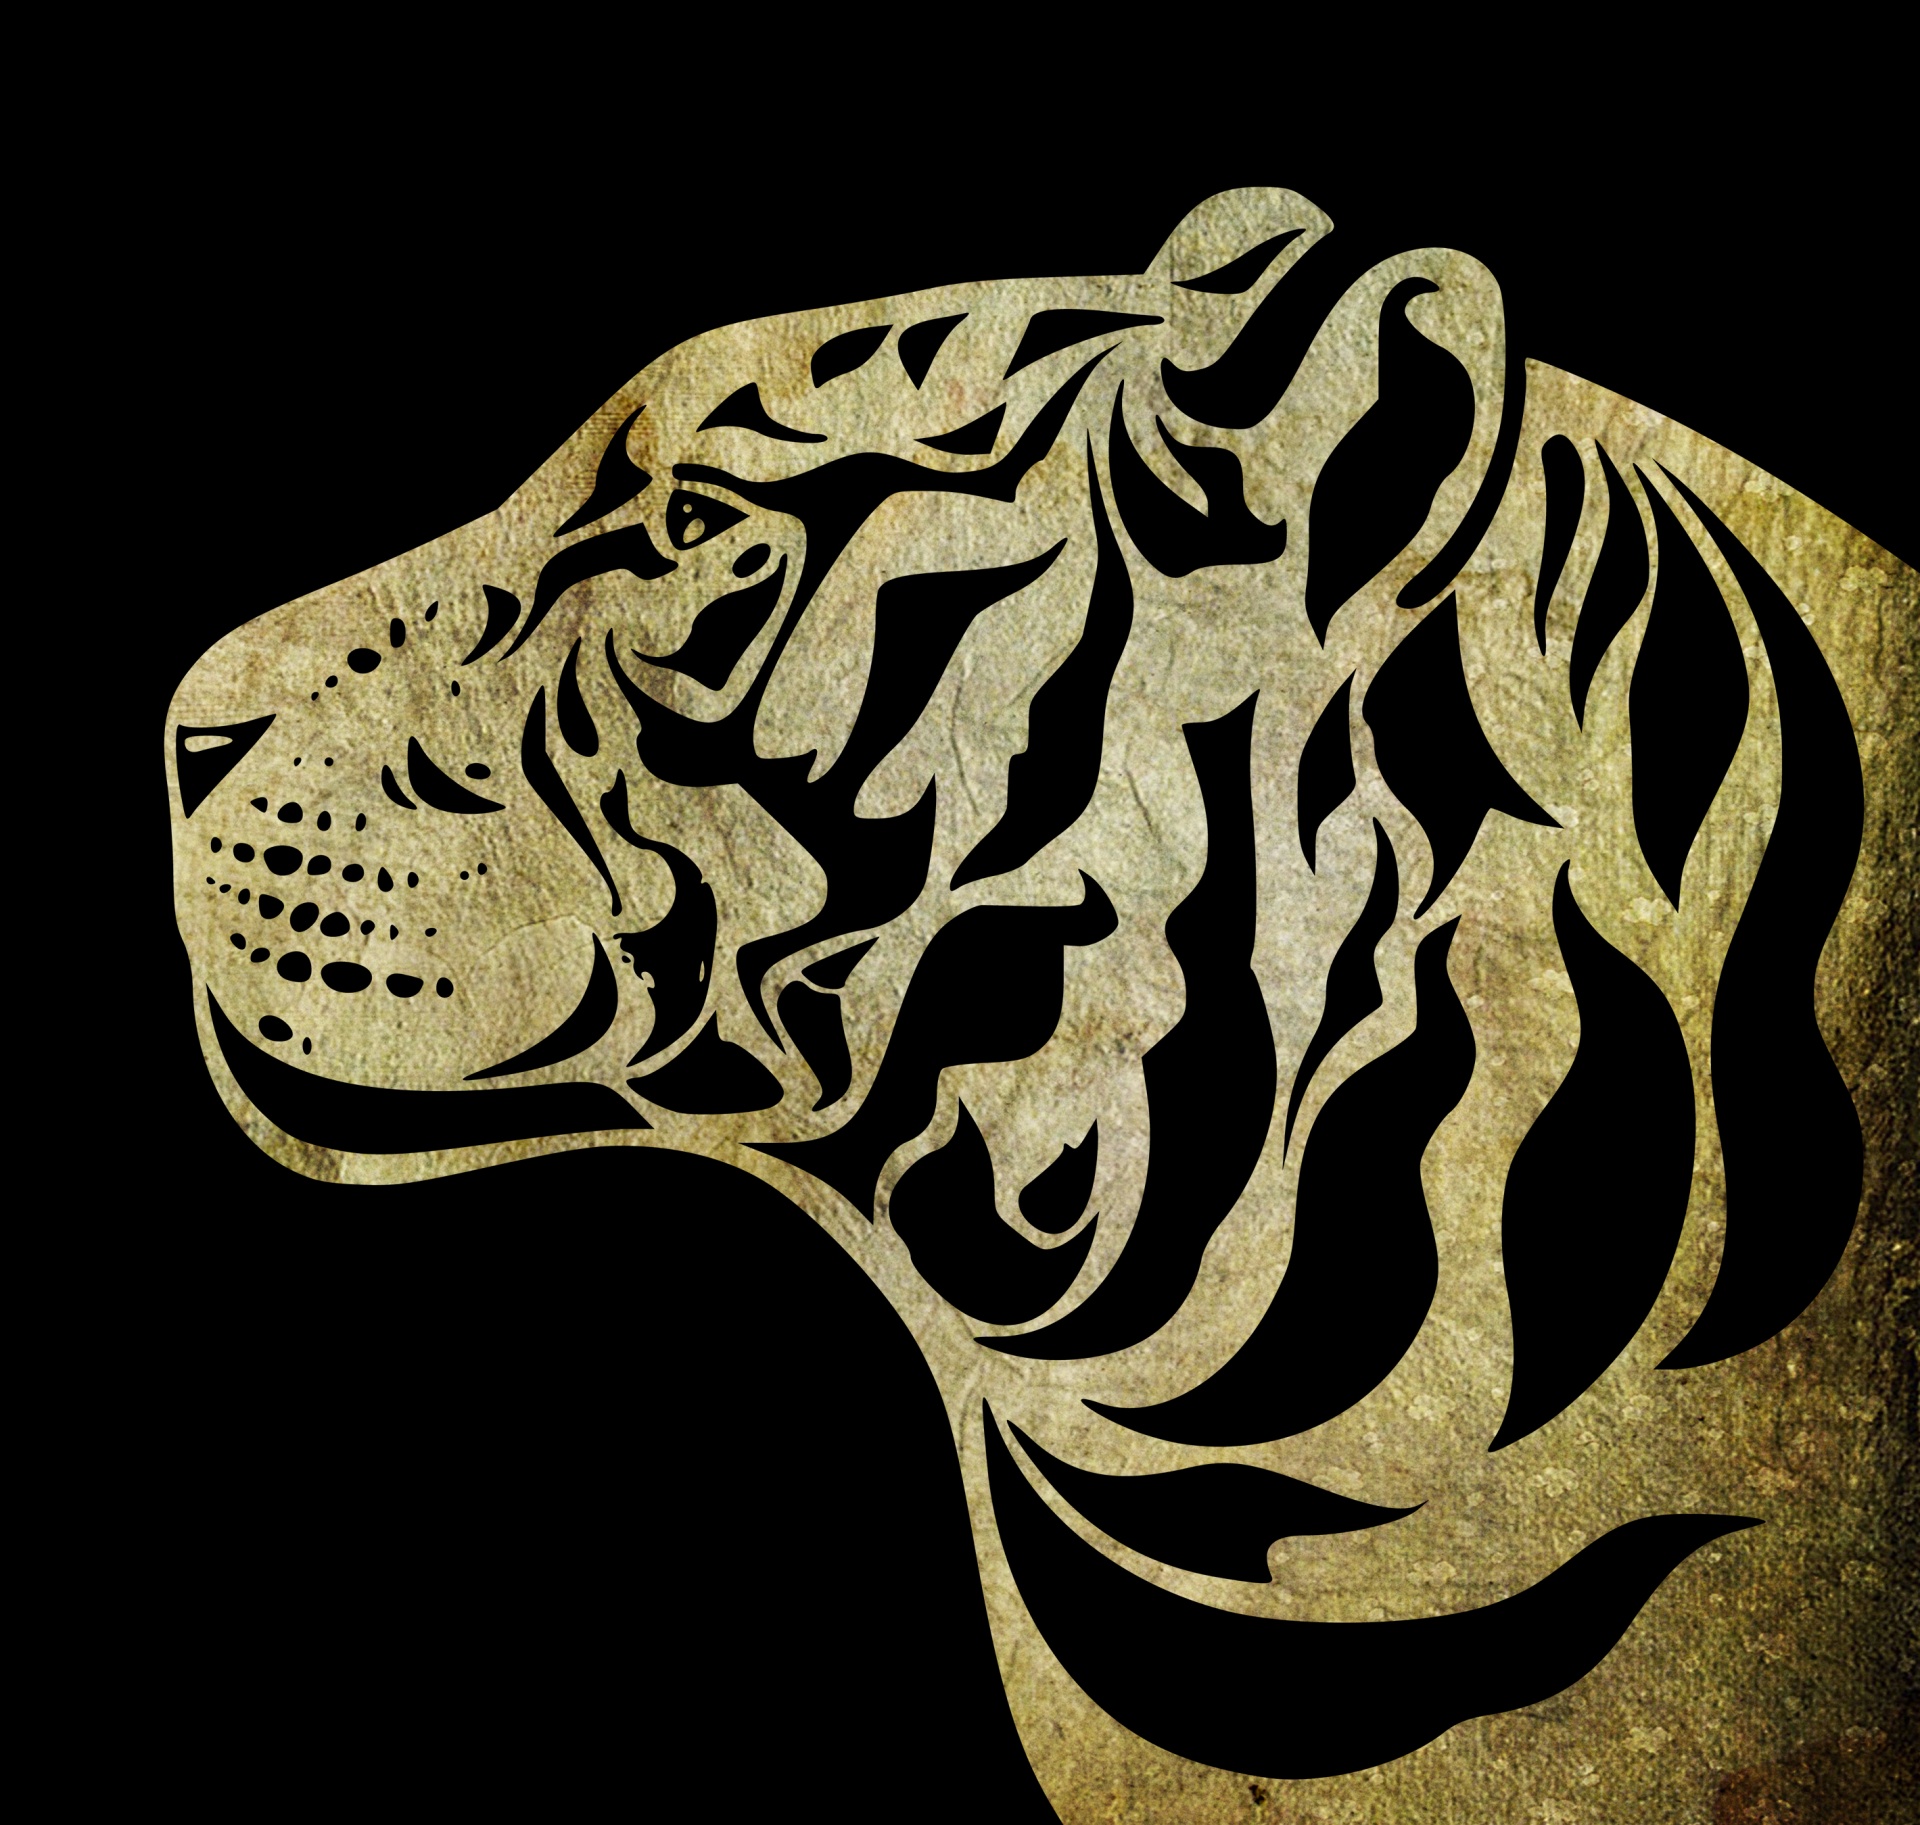 Tiger Face Grunge Background